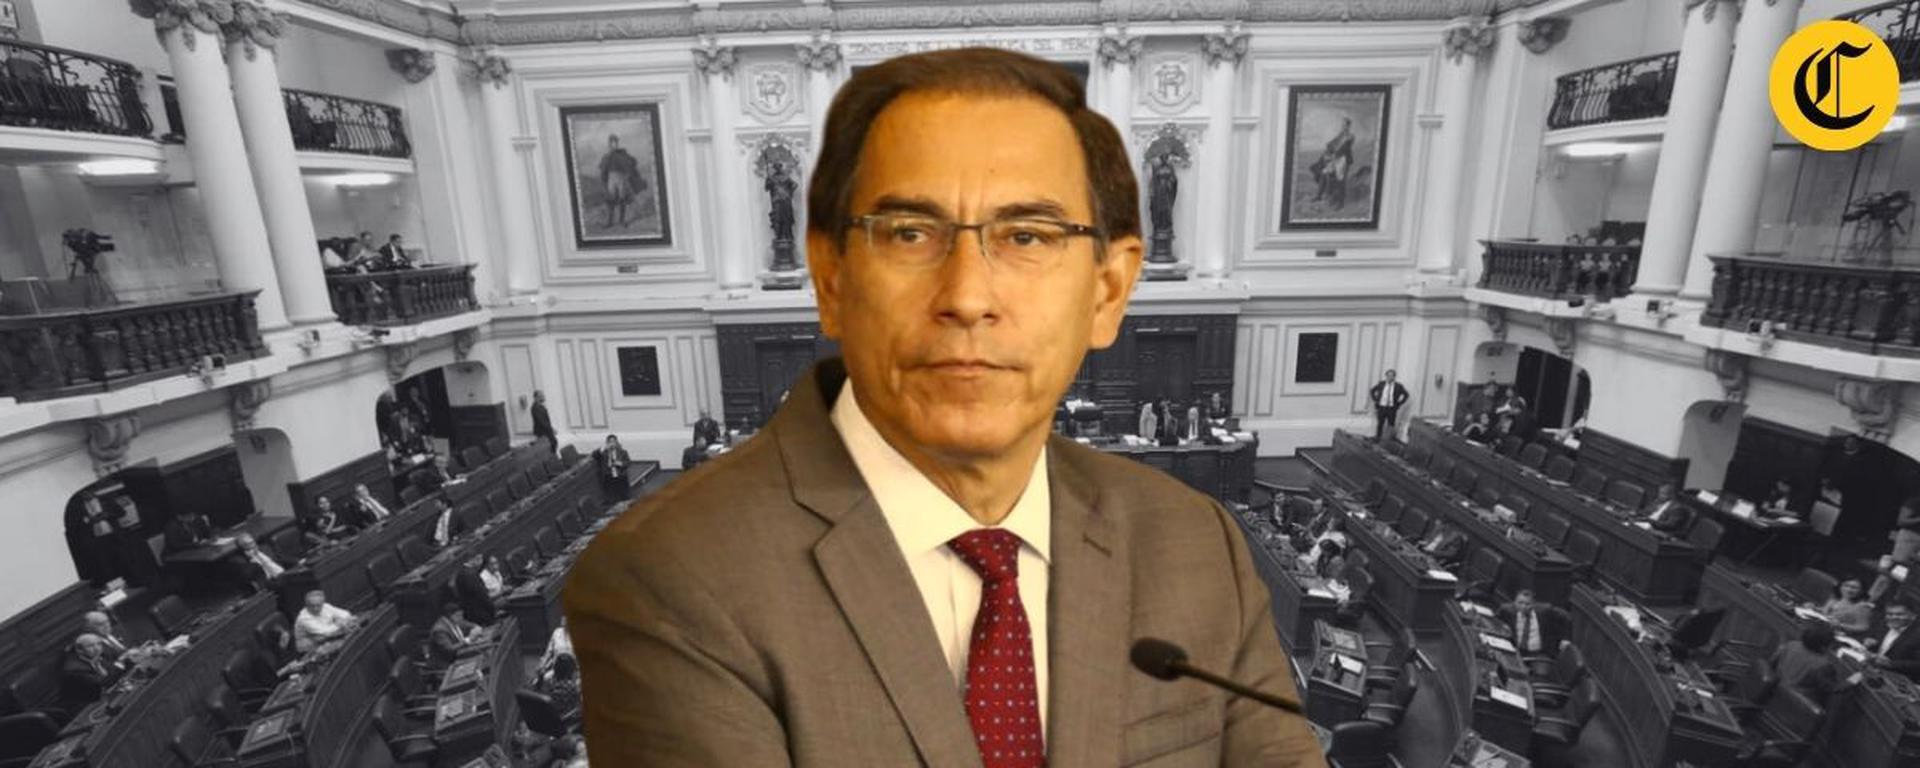 Congreso aprueba acusar penalmente a Martín Vizcarra por las contrataciones de ‘Richard Swing’: las claves del caso